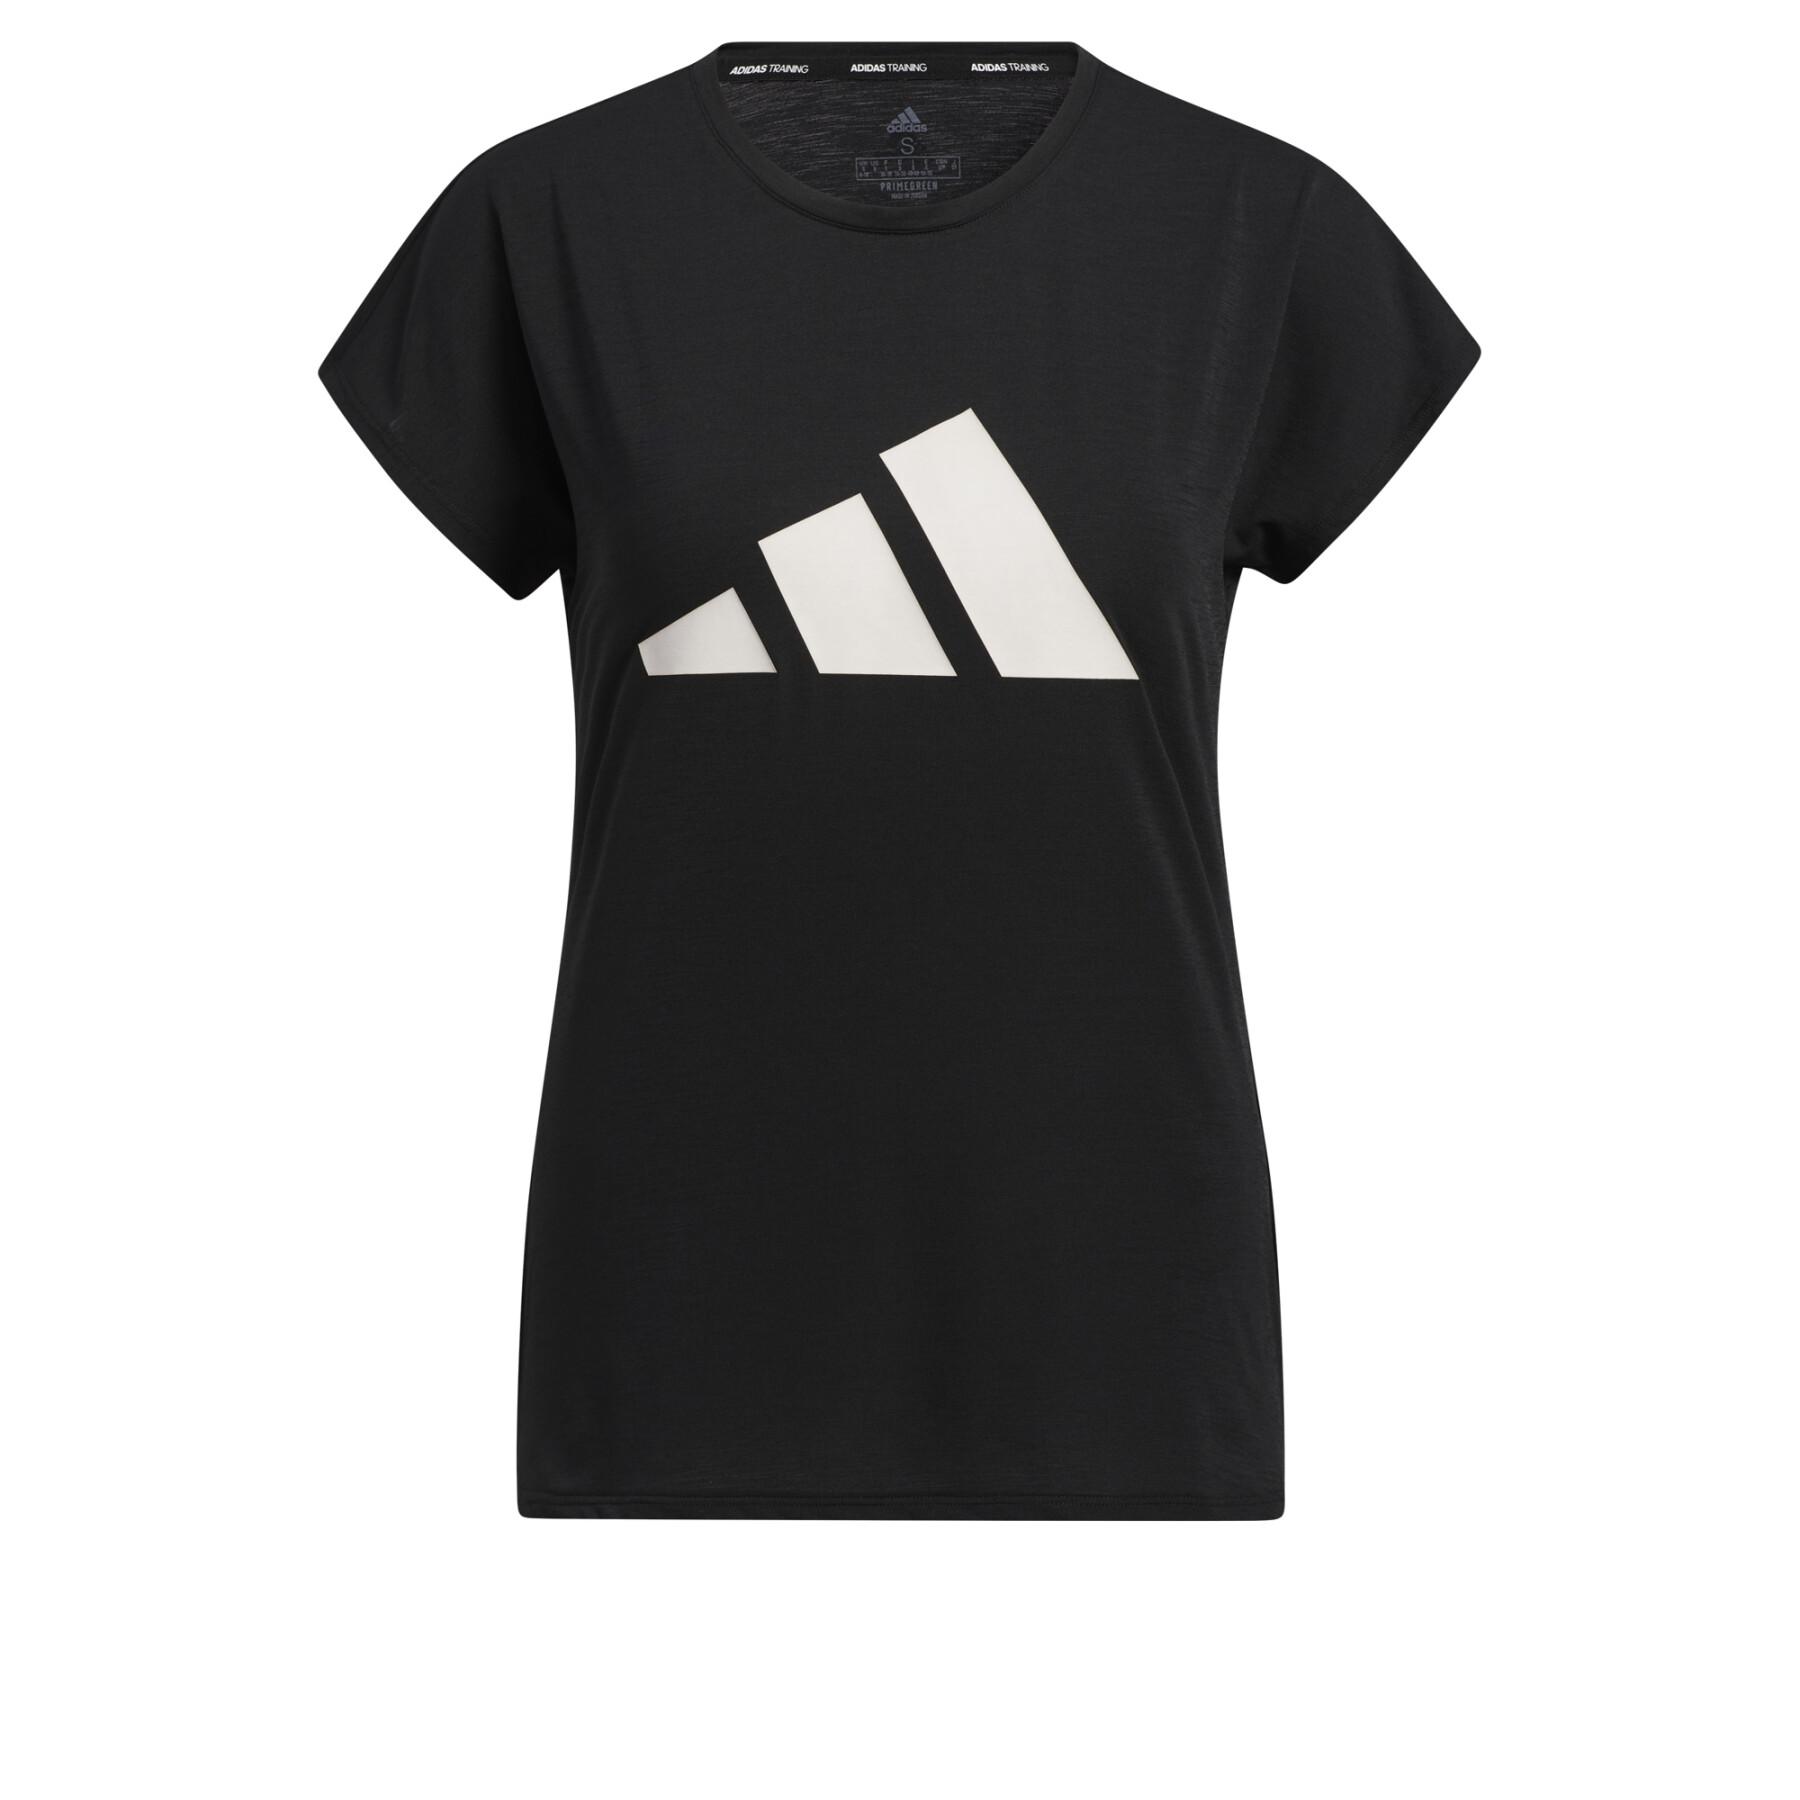 Dames-T-shirt adidas 3-Stripes Training